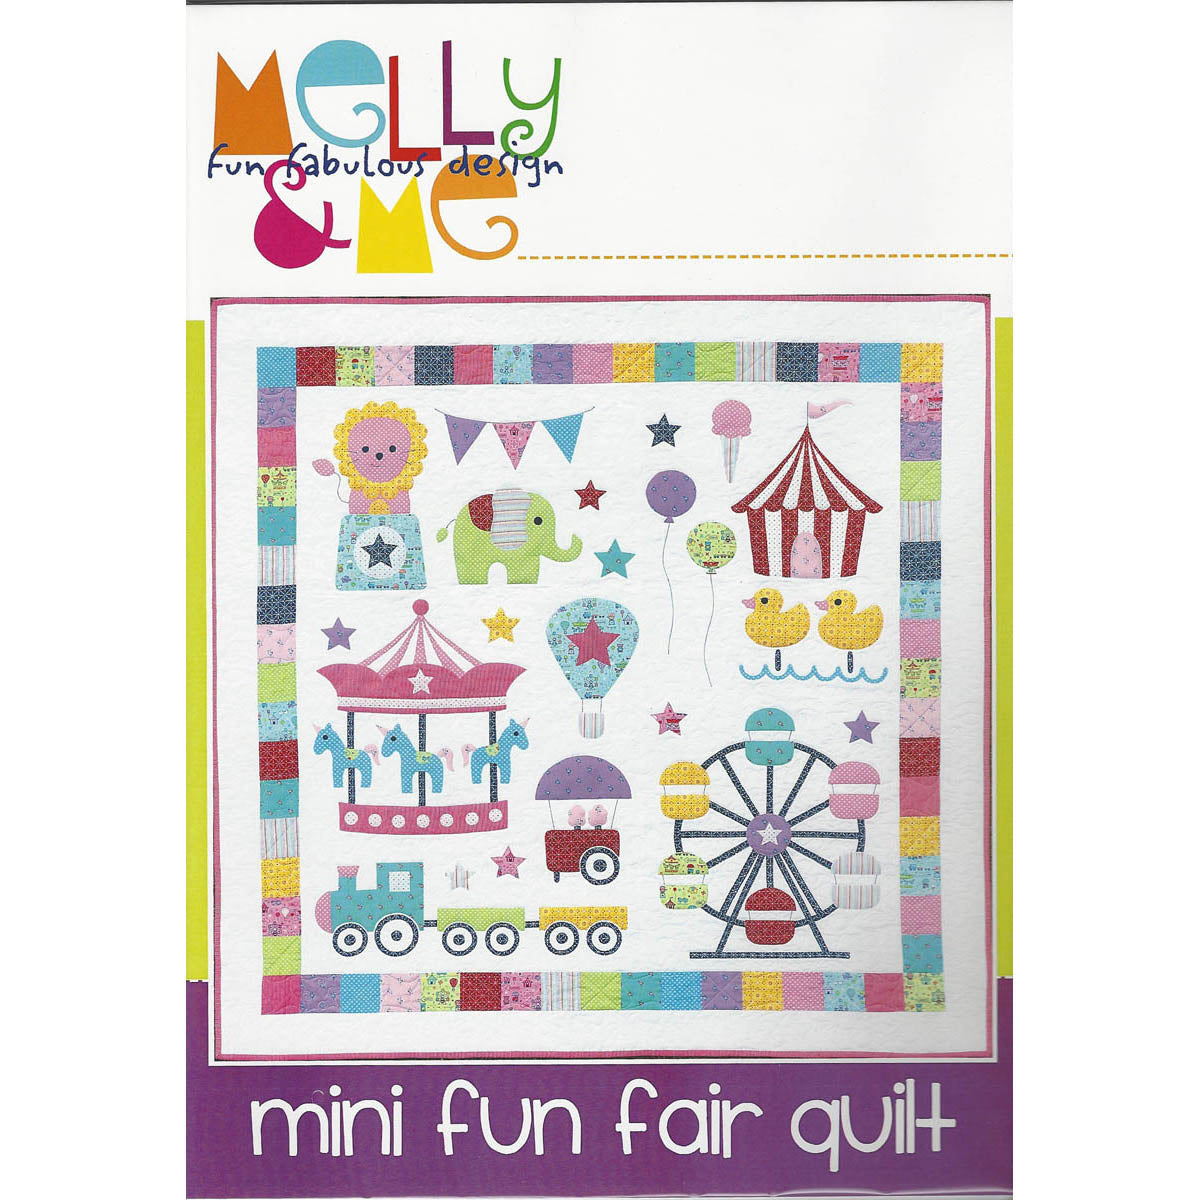 MINI FUN FAIR QUILT  - Quilt Pattern & Book by Melanie McNeice